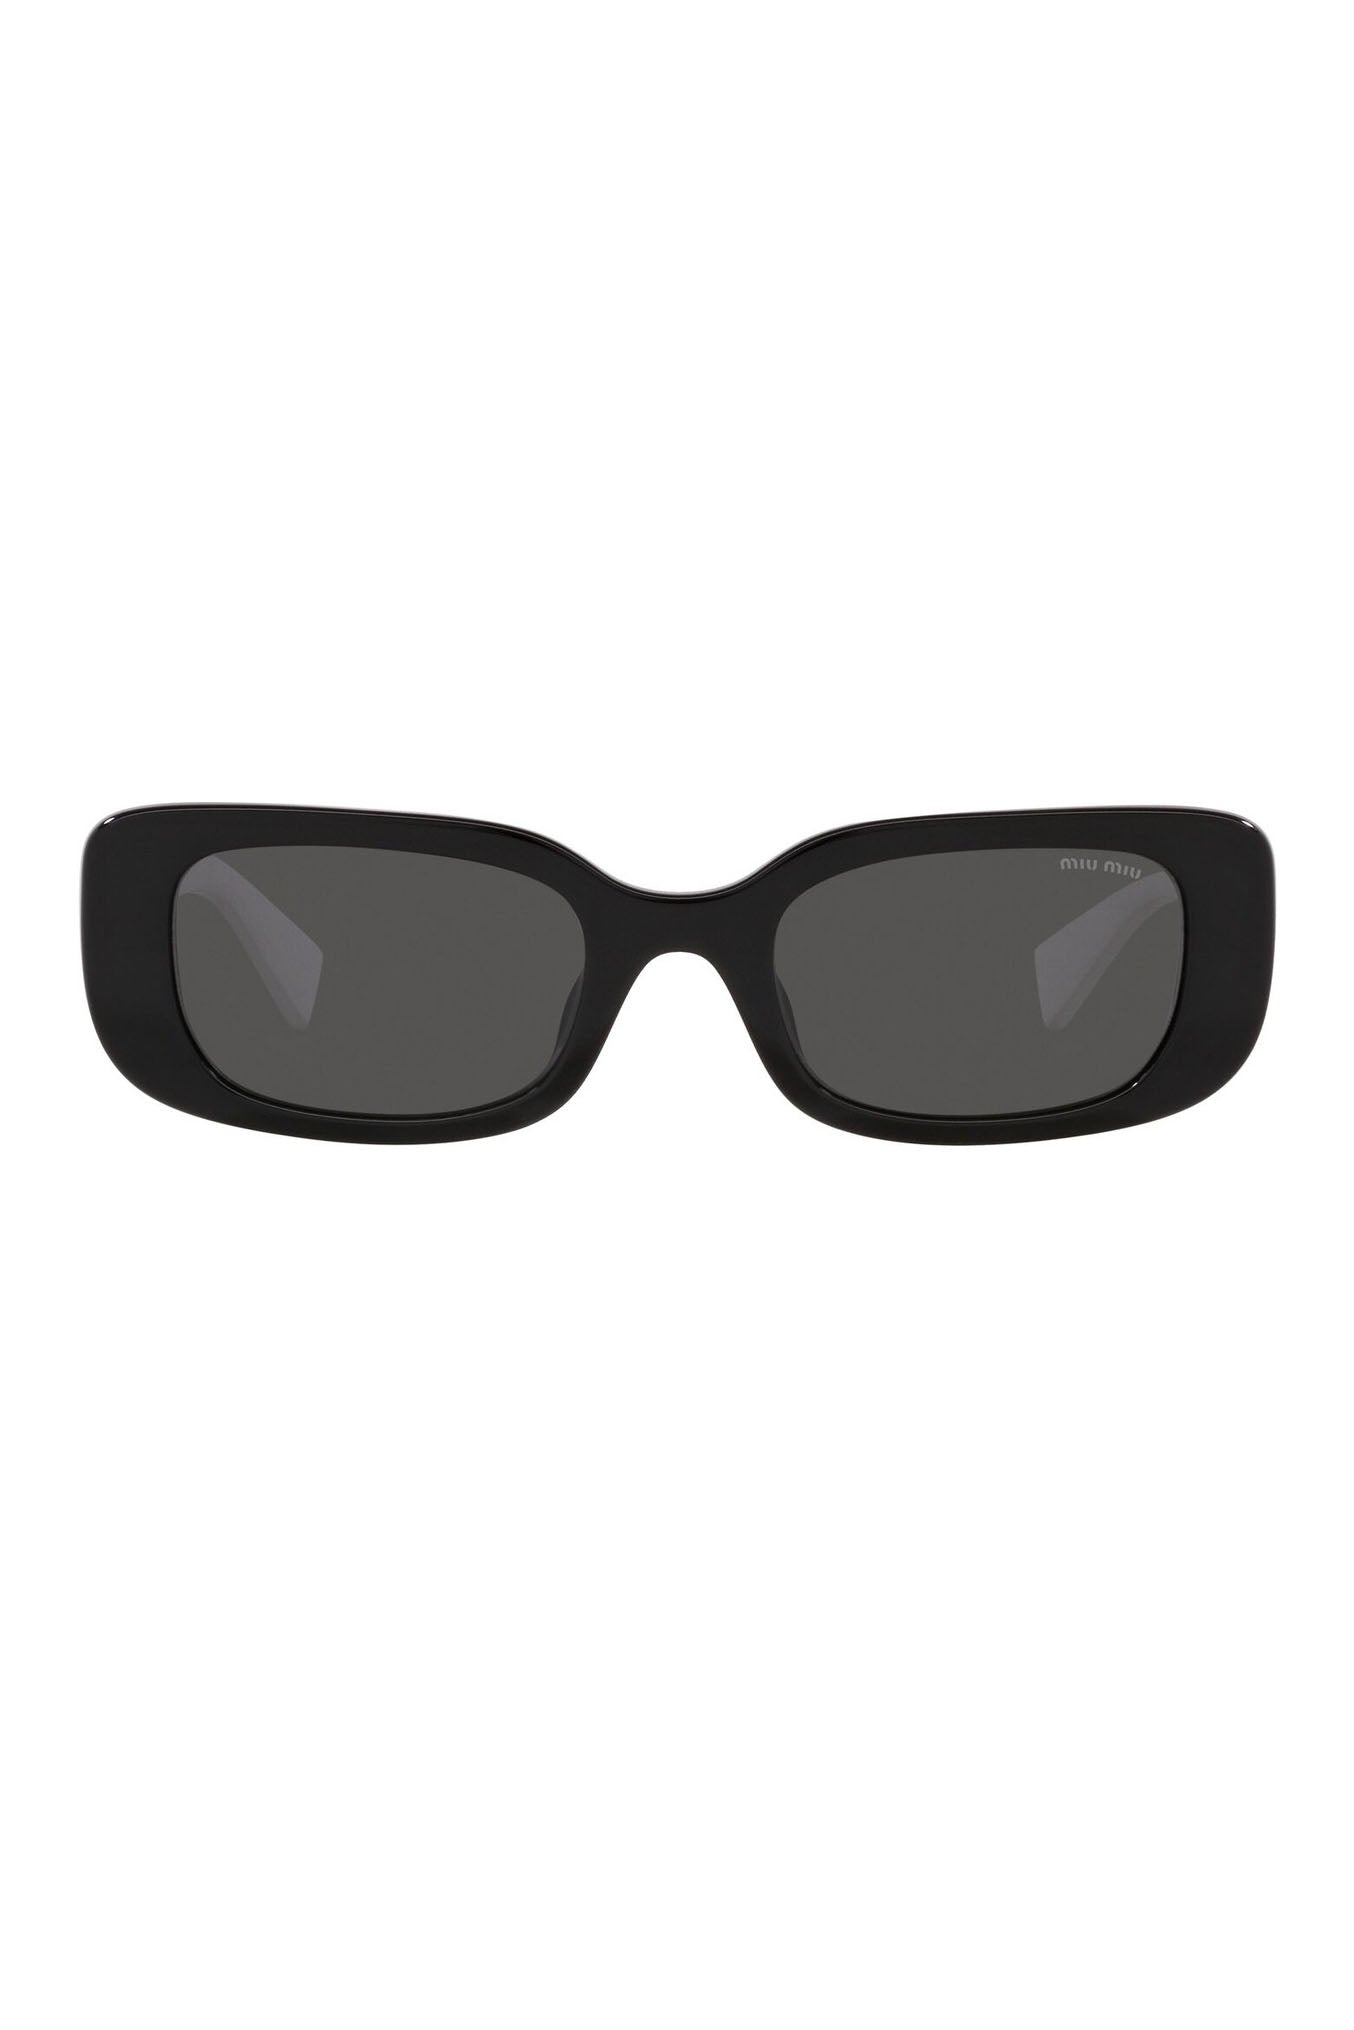 Miu Miu Square Sunglasses Black 0MU 08YS